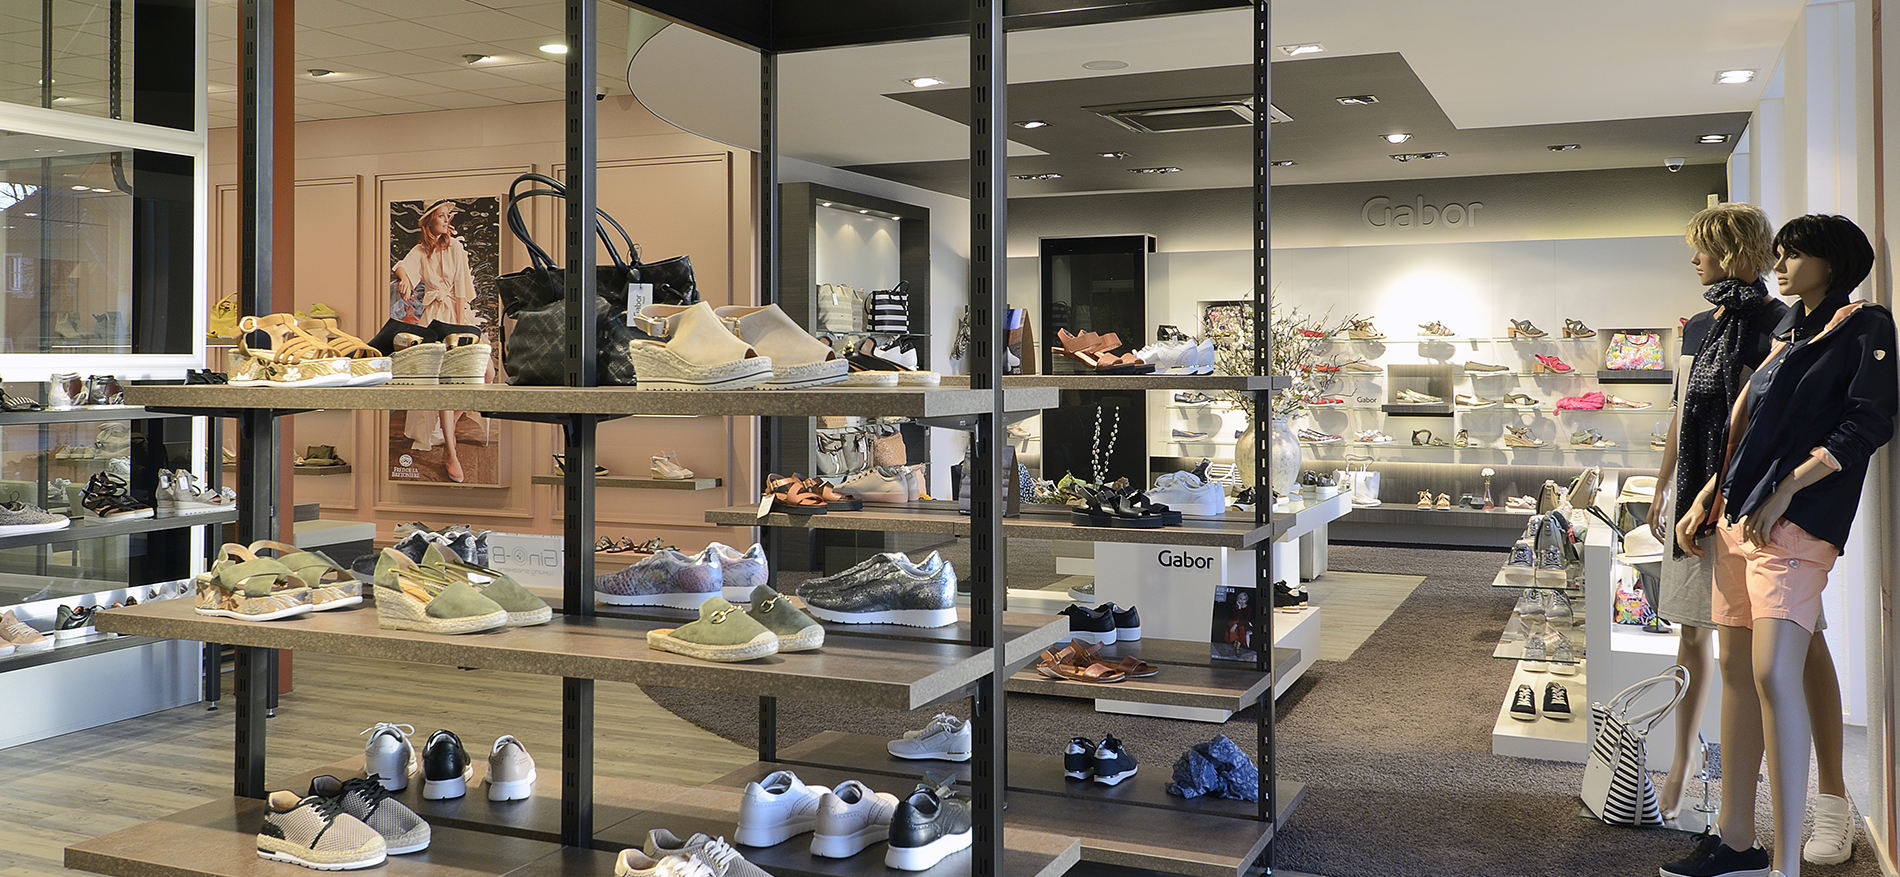 Snoeren Shoes and Foot specialist | Teteringen (NL) - 